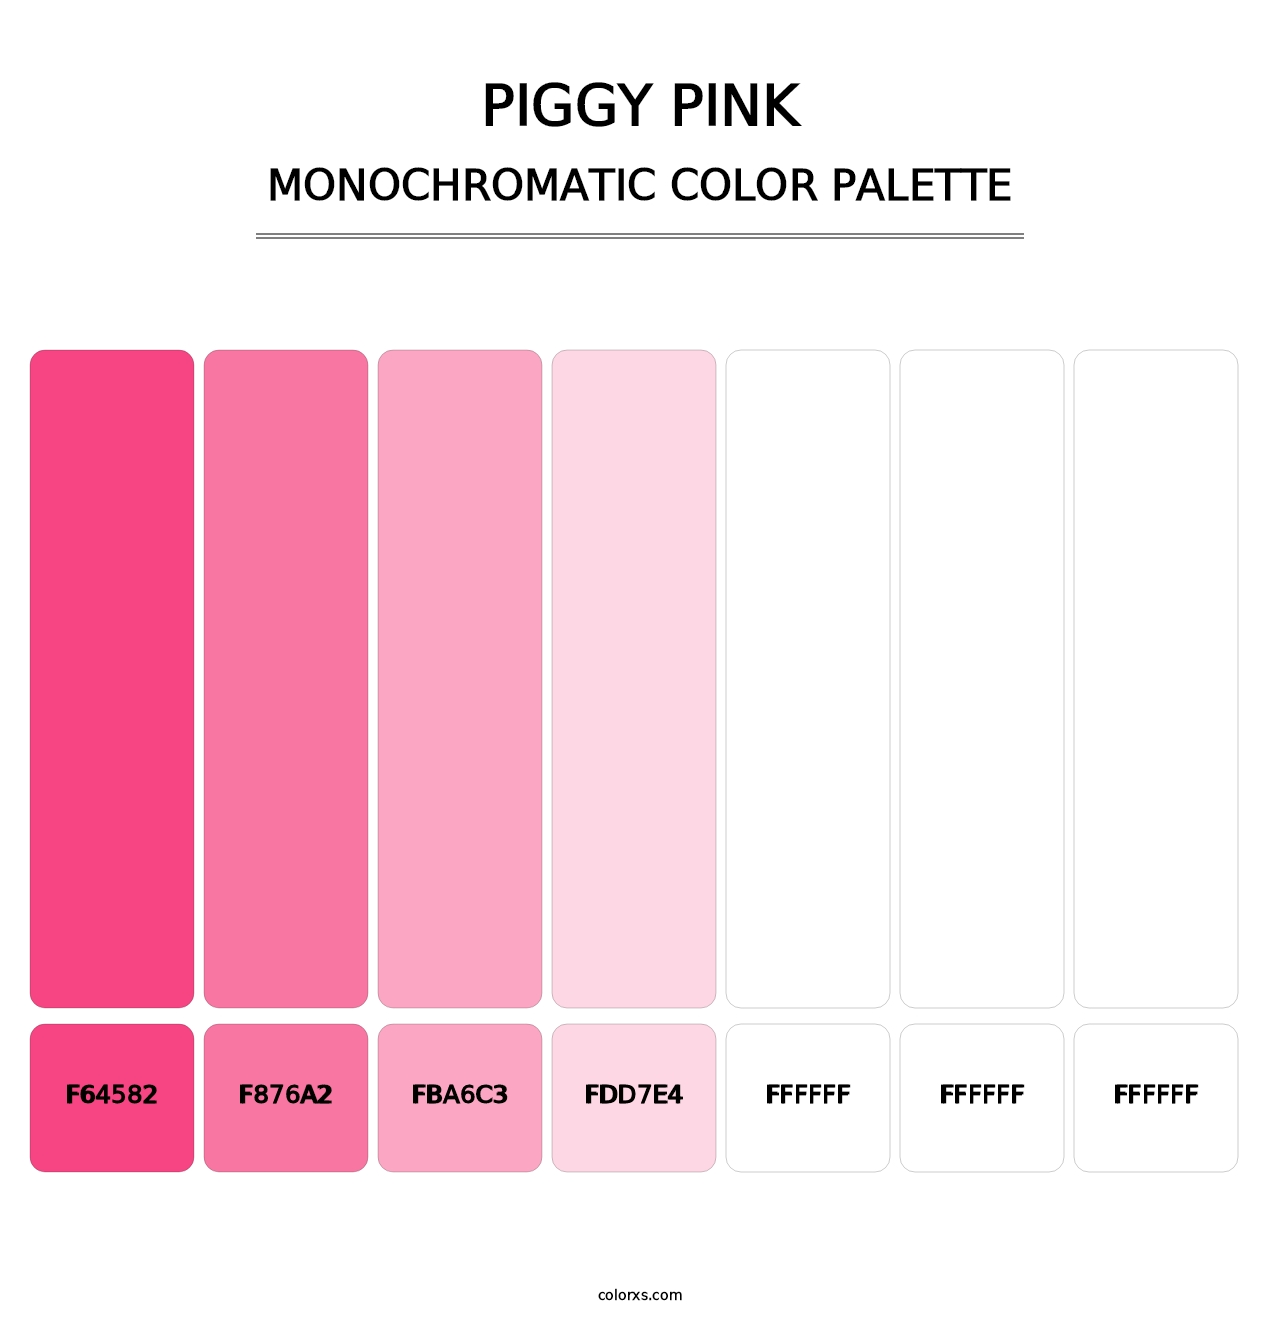 Piggy Pink - Monochromatic Color Palette